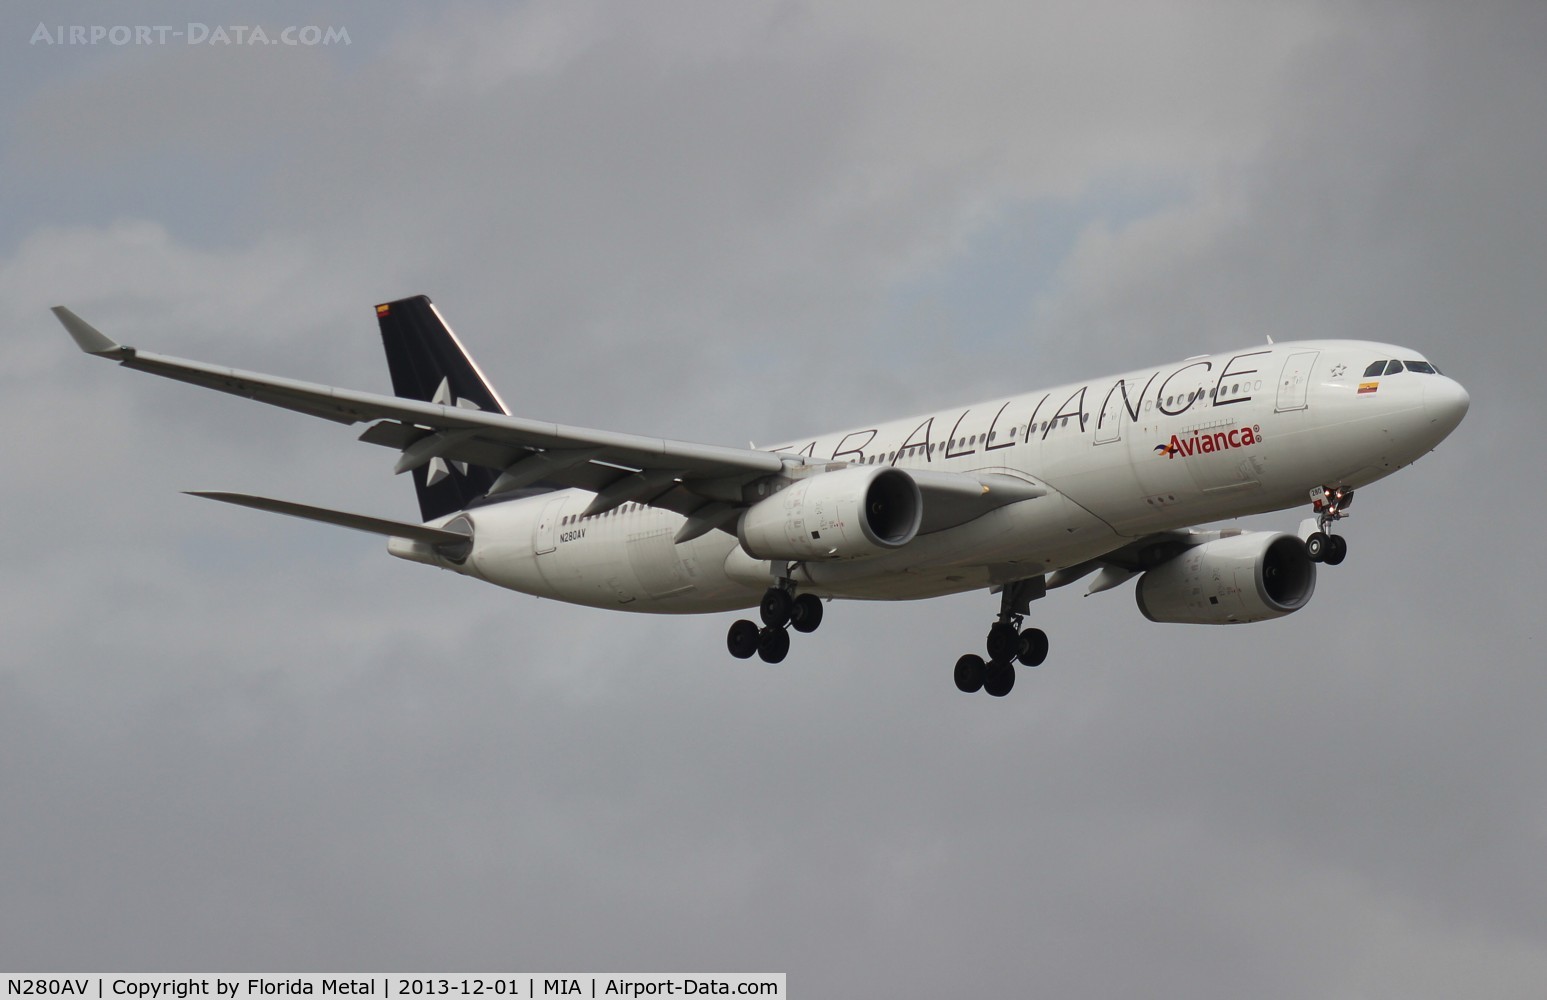 N280AV, 2013 Airbus A330-243 C/N 1400, Avianca Star Alliance A330